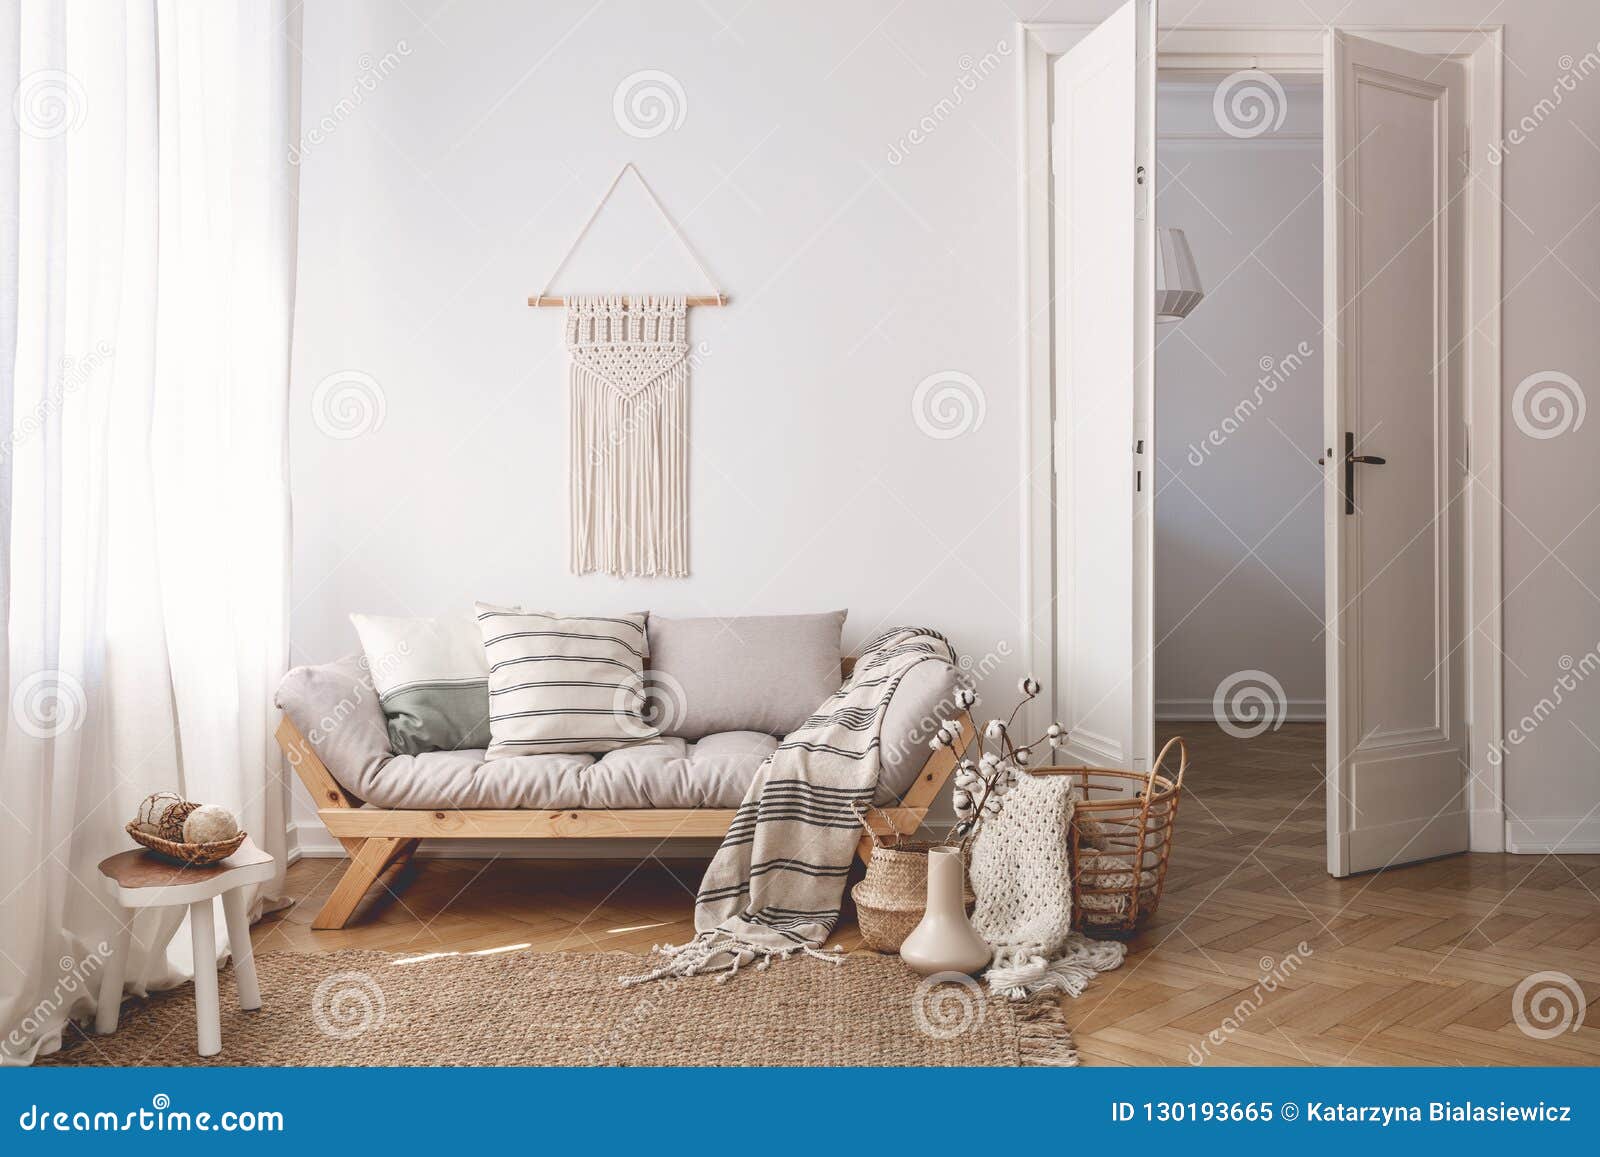 sunlit living room interior with open door, herringbone parquet floor, natural, beige textiles and white walls